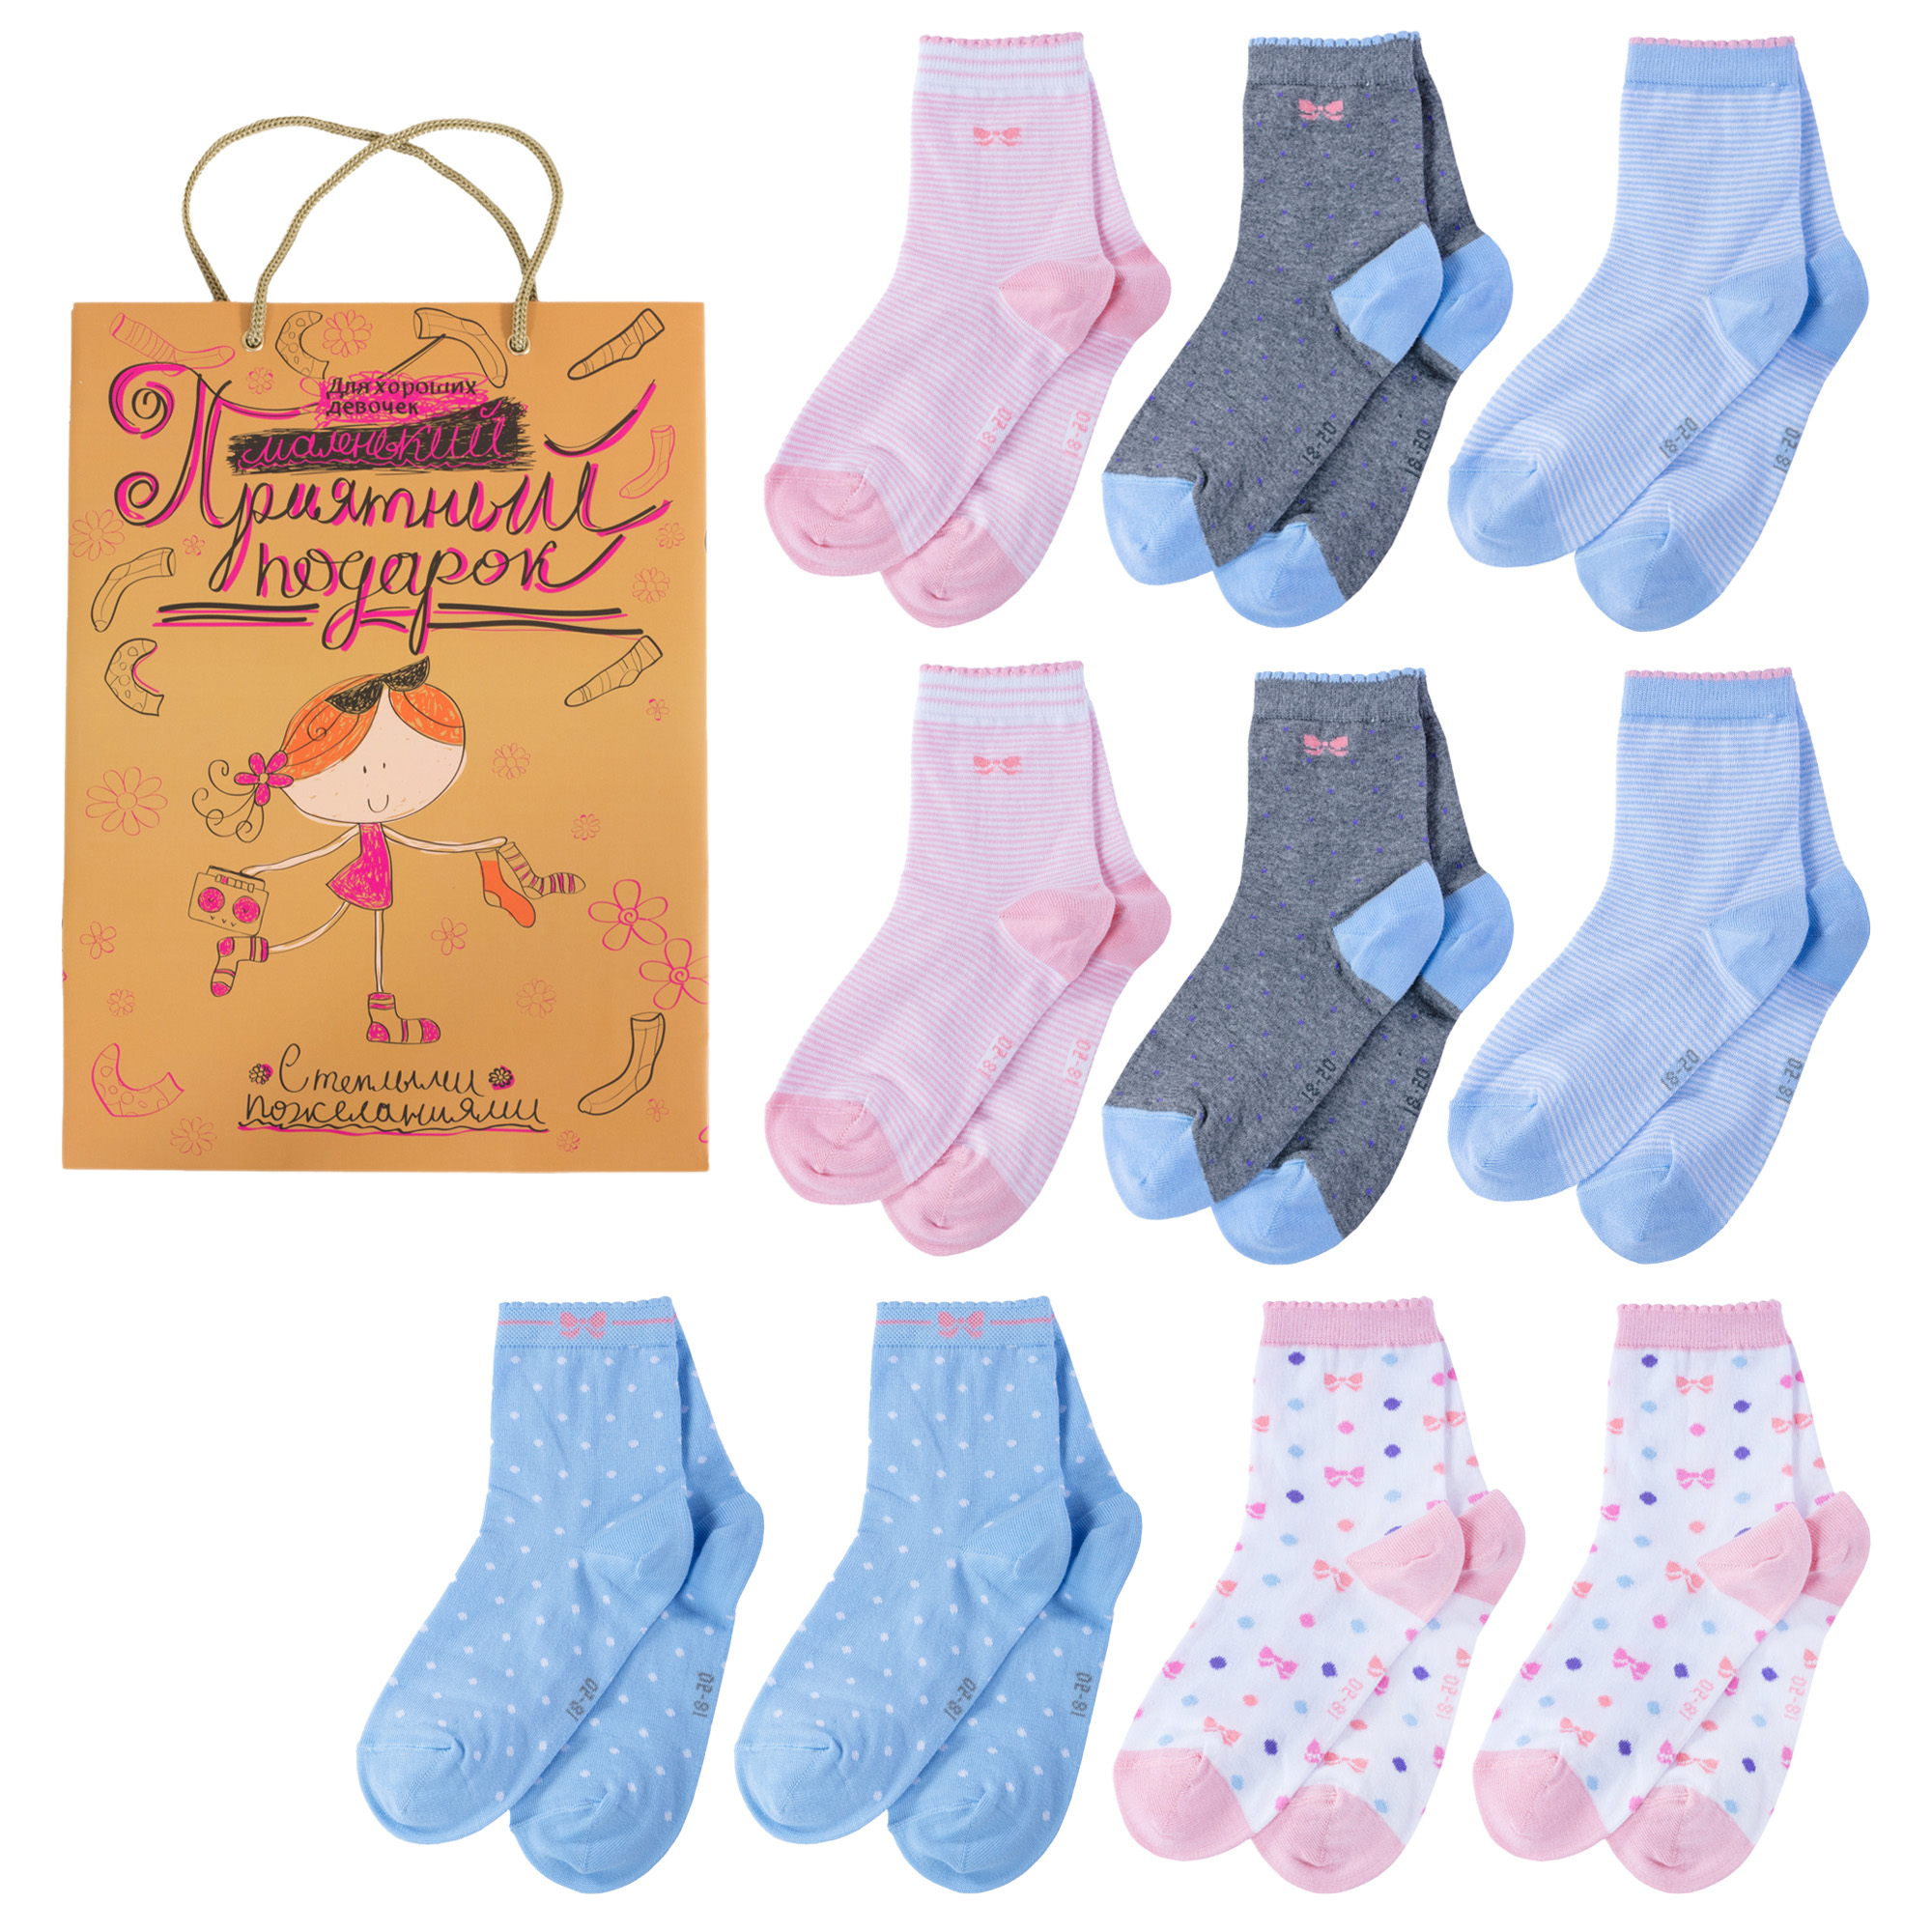 Носки для девочек LorenzLine Л105-10 цв. голубой; розовый; серый; белый р. 44842 носки для девочек lorenzline л105 10 цв голубой розовый серый белый р 44905